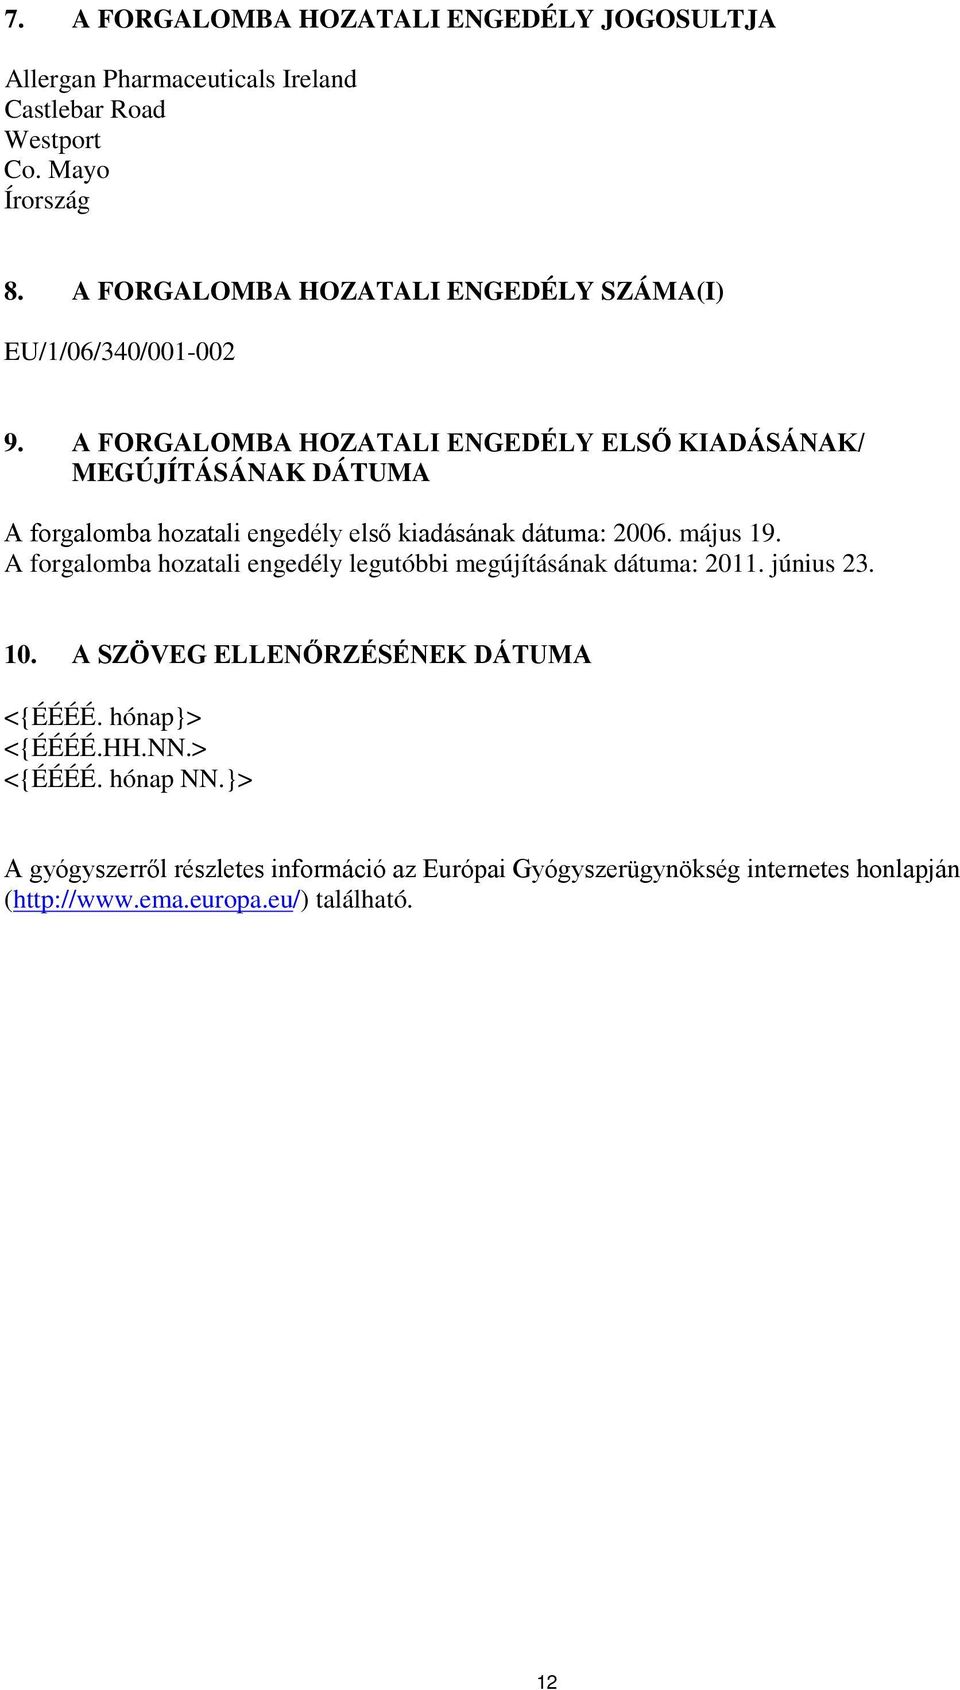 A FORGALOMBA HOZATALI ENGEDÉLY ELSŐ KIADÁSÁNAK/ MEGÚJÍTÁSÁNAK DÁTUMA A forgalomba hozatali engedély első kiadásának dátuma: 2006. május 19.